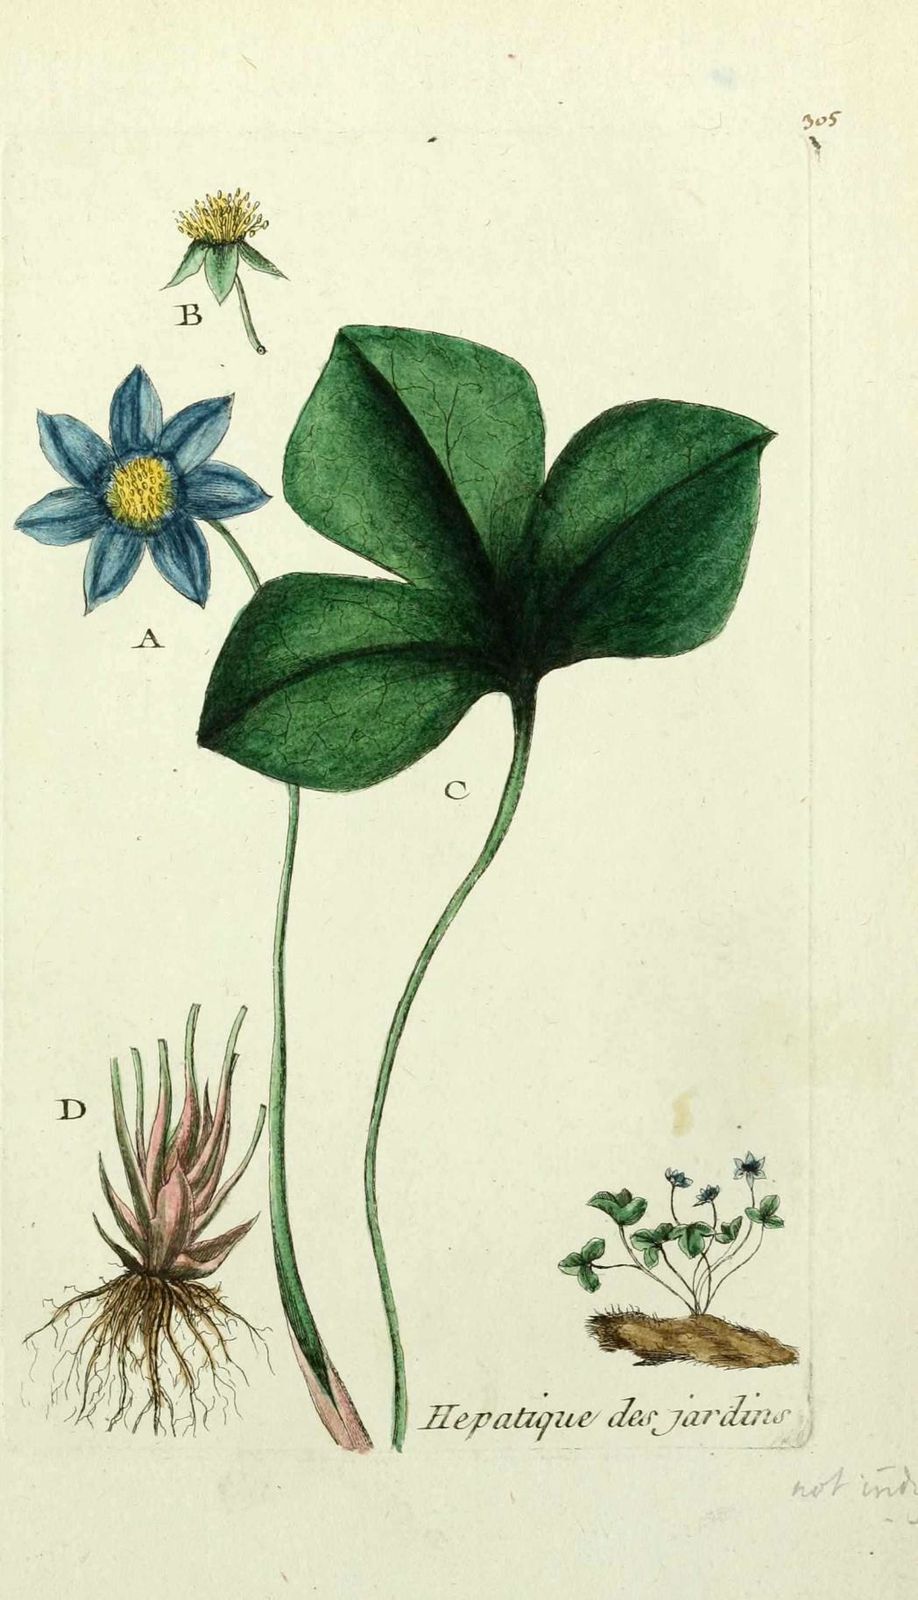 hepatique des jardins - anemone hepatica ( printanniere, he